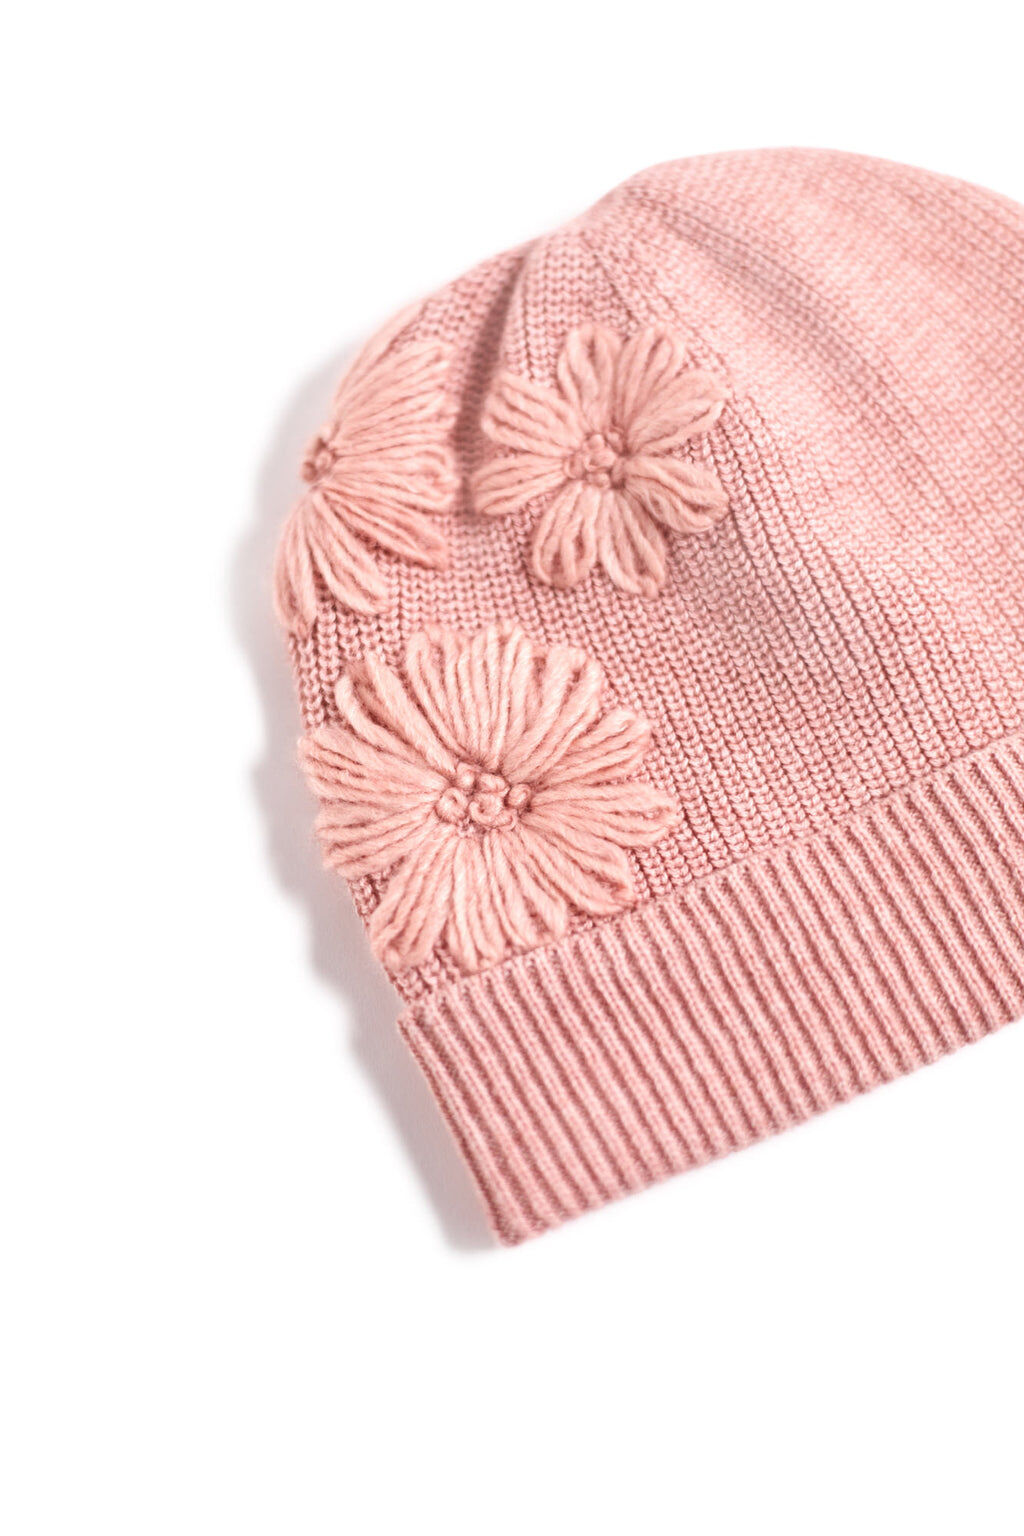 Bonnet - Rose pâle coton cachemire